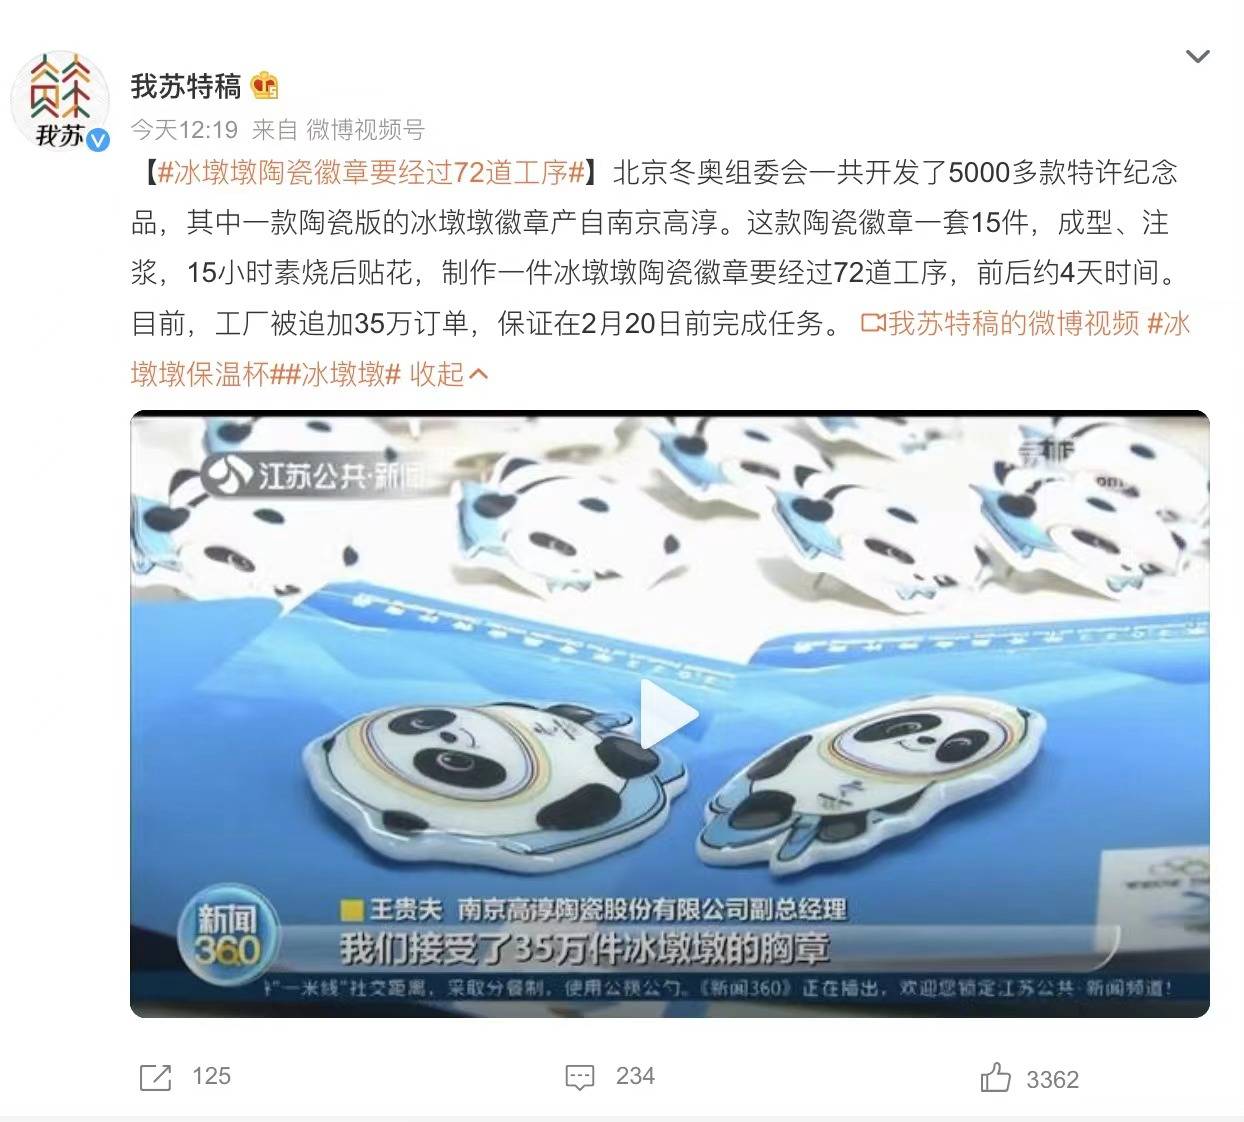 WechatIMG4422 - 4.000 yuan possono acquistare solo 3 Bing Dung Dun, quando sarà popolare la mascotte Bing Dung Dun?